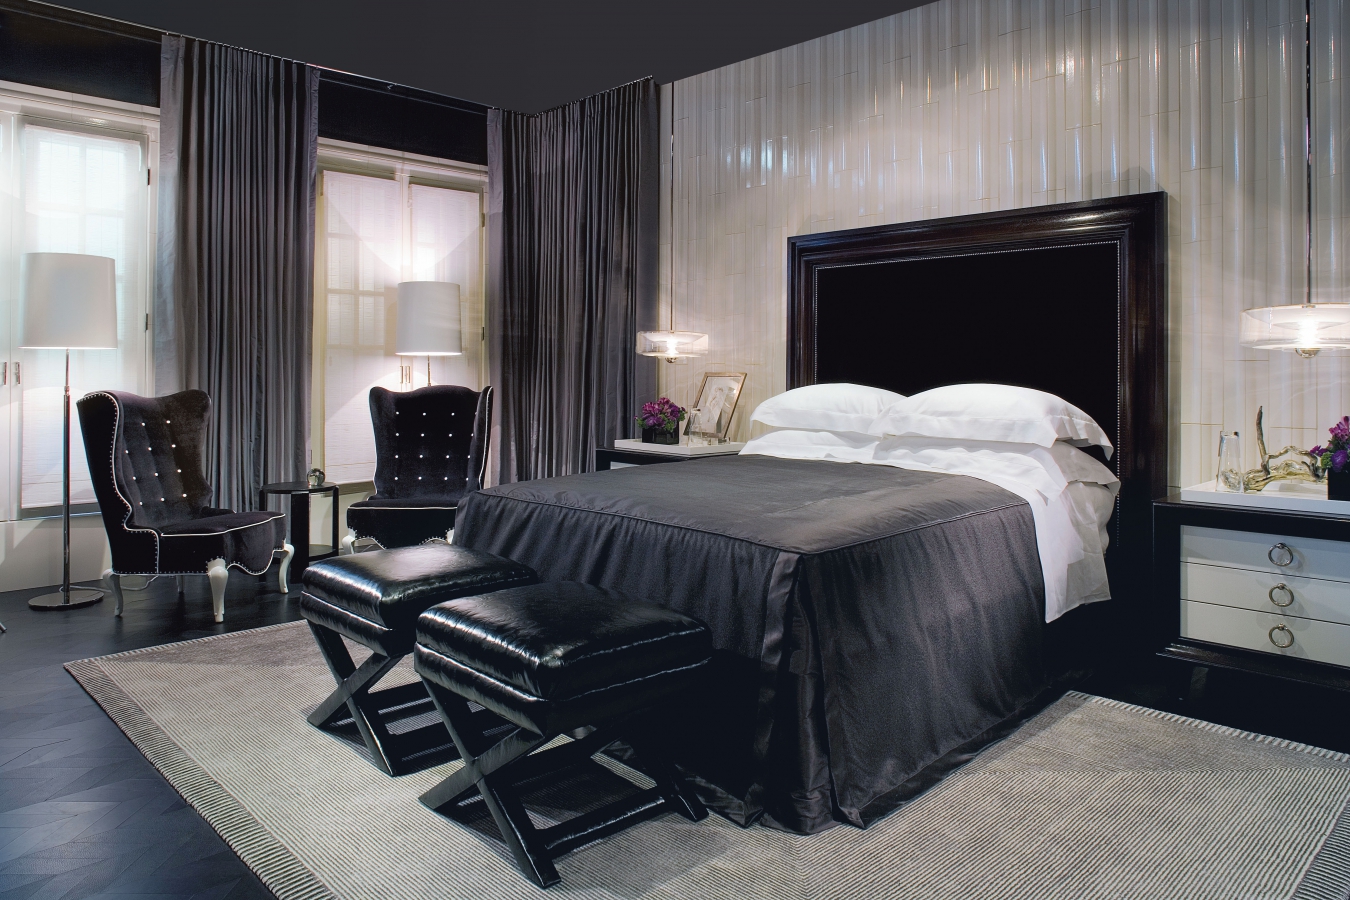 exquisite bedroom design in black